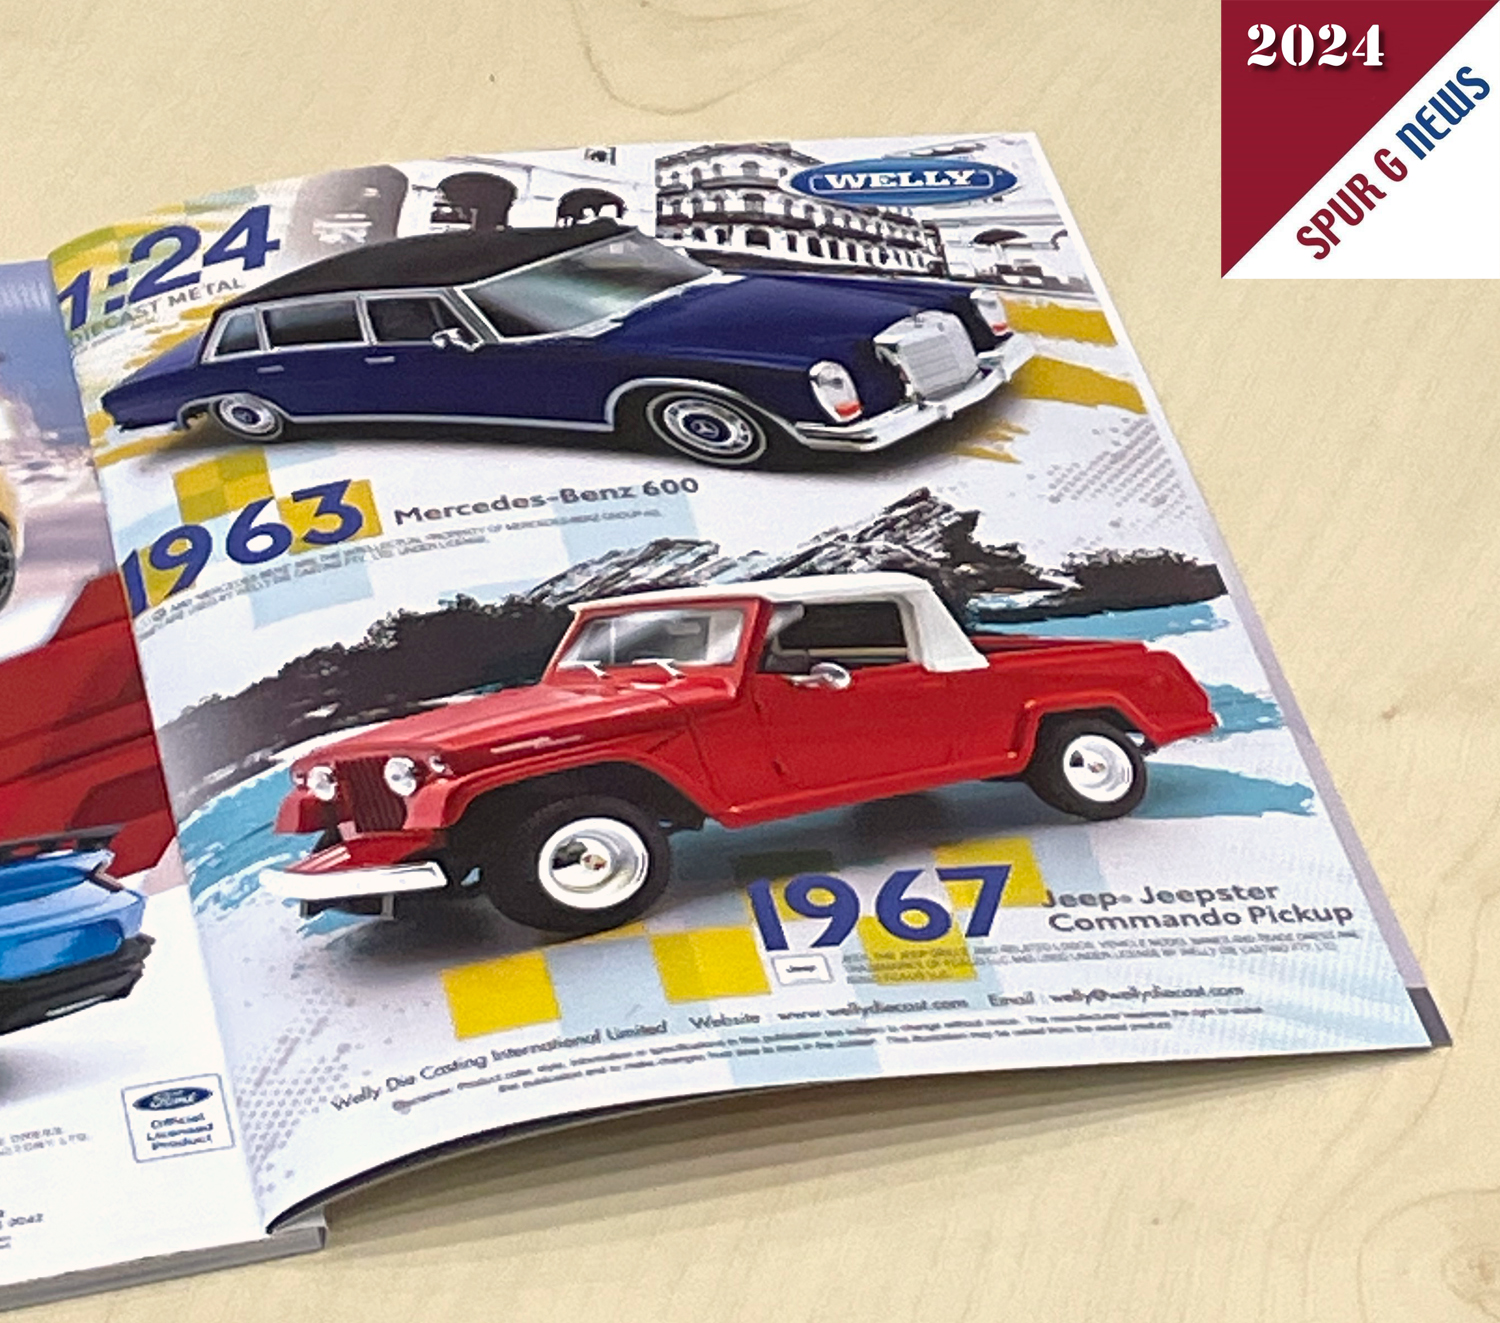 Im Printmagazin Global toys & games hat WELLY 4 Neuheiten im Mastab 1:24 grer abgebildet. Der Mecedes Benz 600 aus dem Jahre 1963 sowie der Jeep Jeepster als Commando Pickup aus 1967 sind im Ausschnitt abgebildet. 